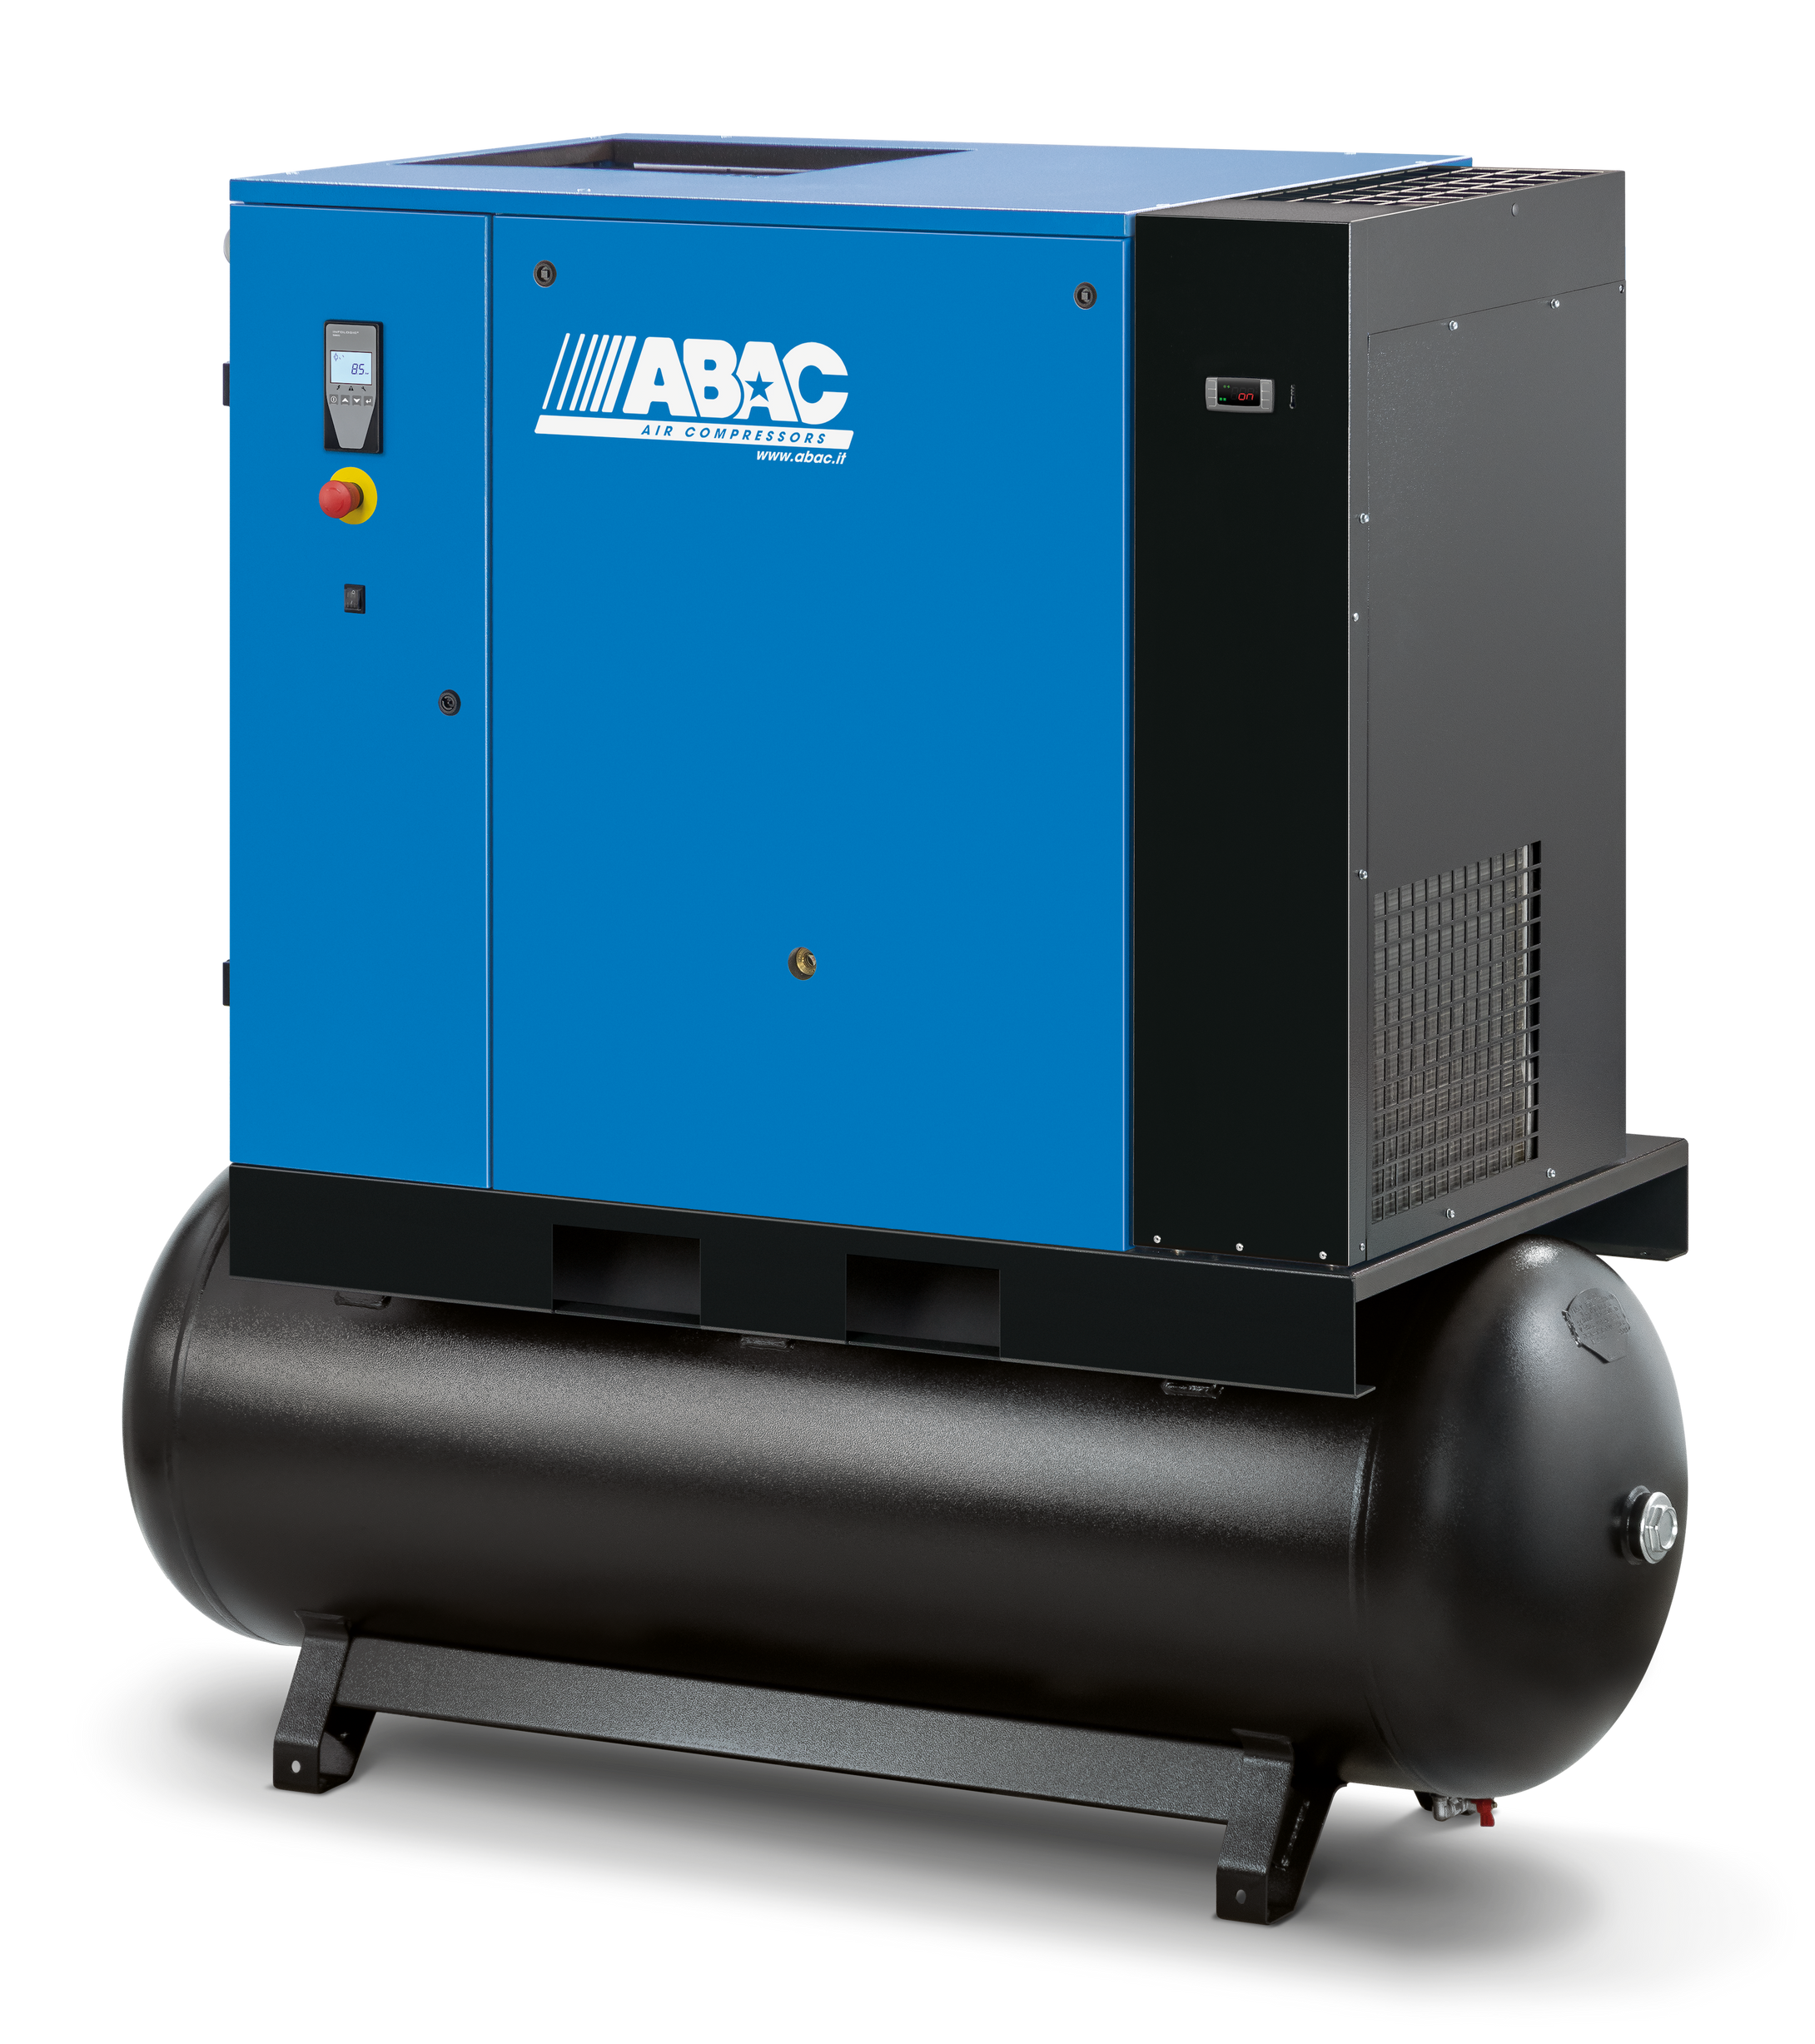 ABAC SPINN 15XE 15kW 78CFM 10Bar 500L (400V) Screw Compressor & Dryer - 4152028945